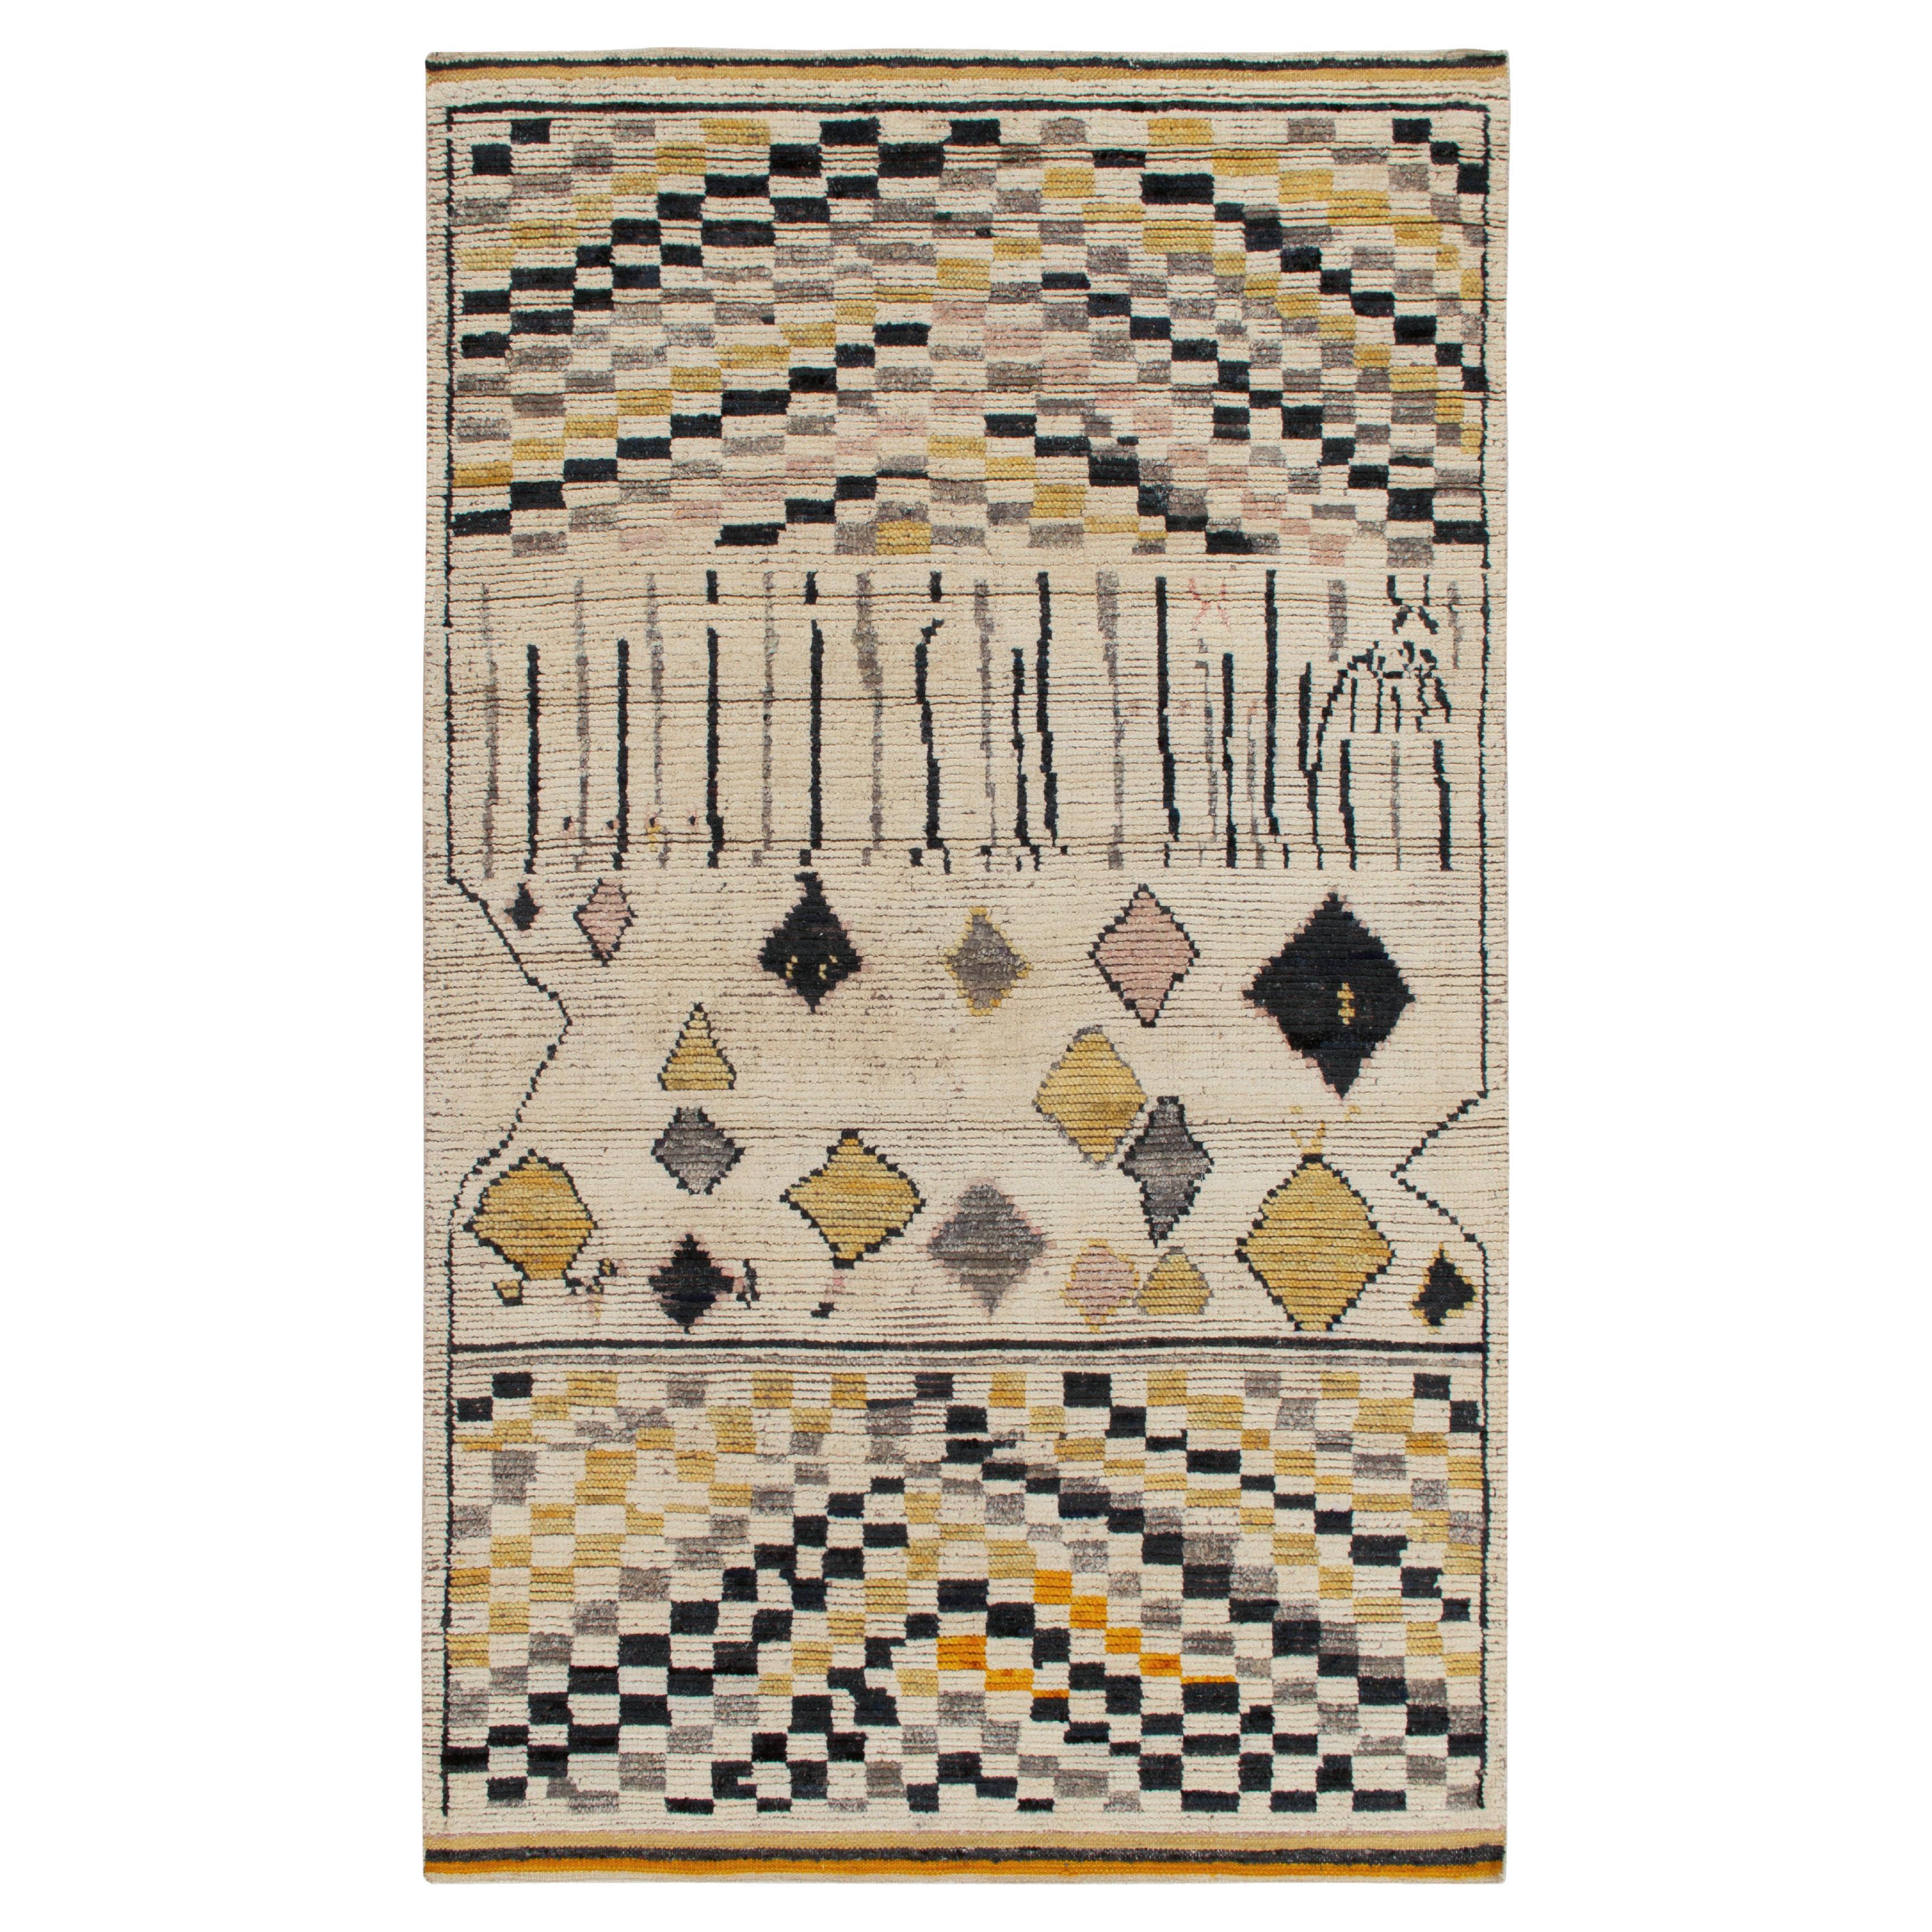 Marokkanischer Teppich von Rug & Kilim in Weiß, Gold, Schwarz Geometrisches Muster